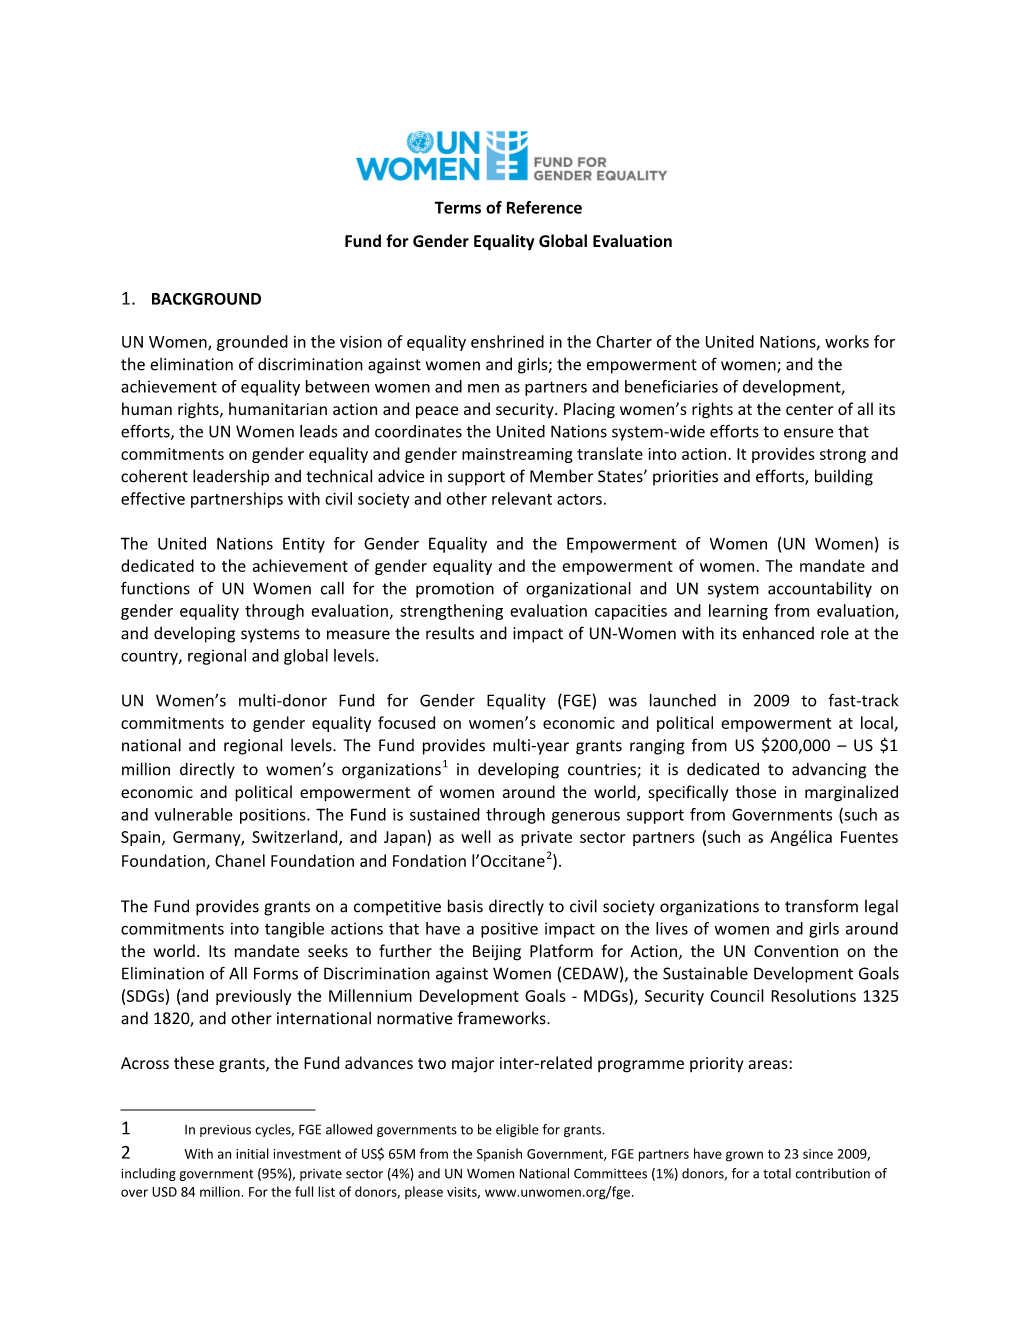 Fund for Gender Equality Global Evaluation